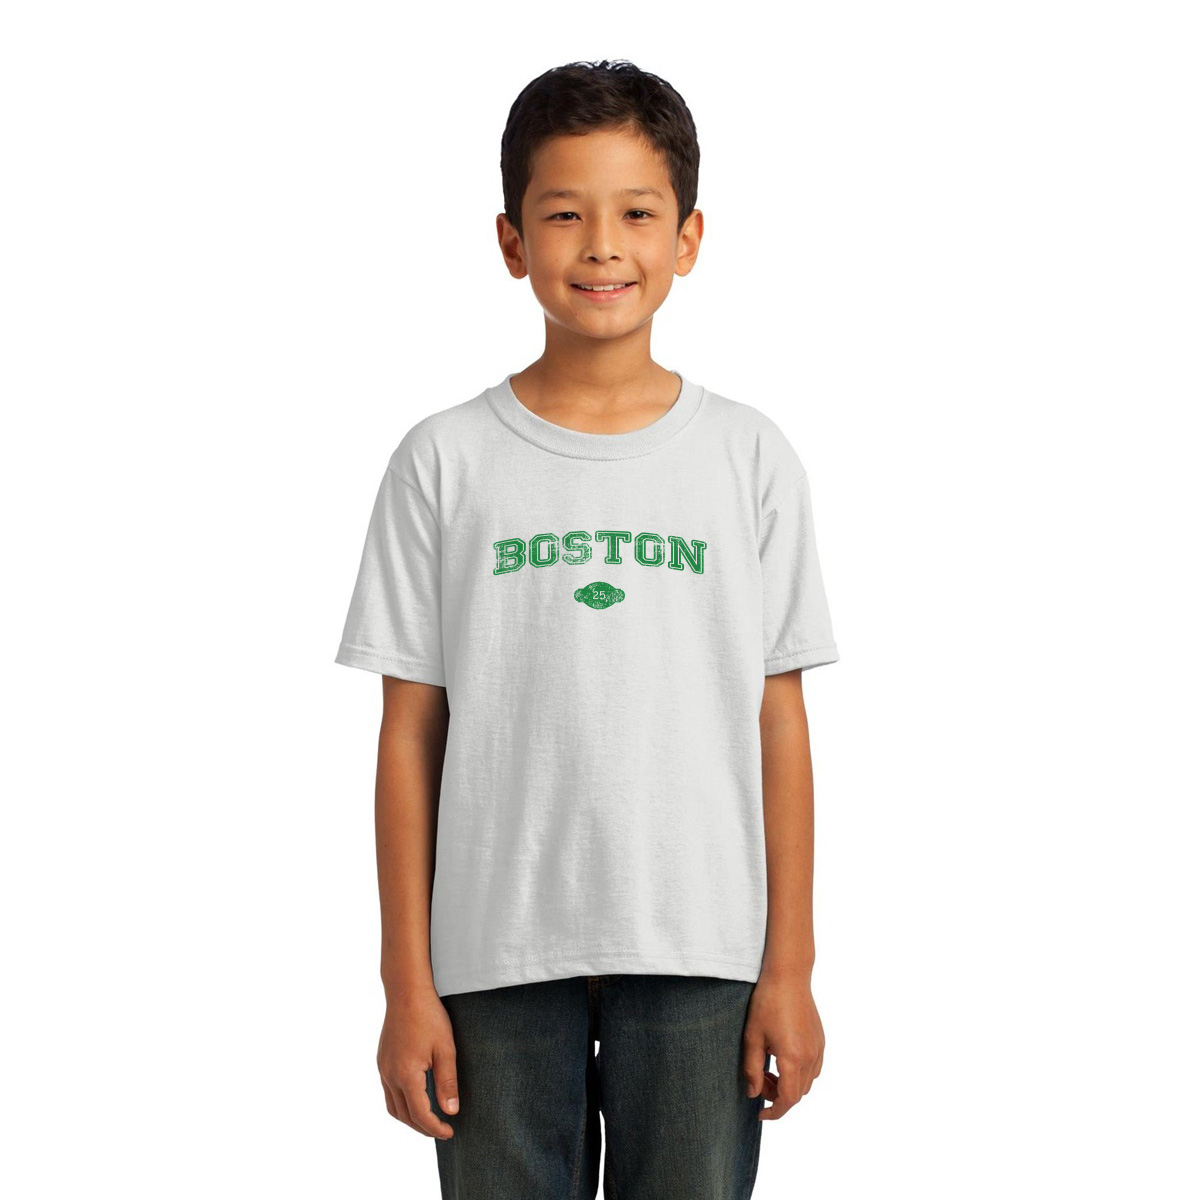 Boston 1822 Represent Kids T-shirt | White